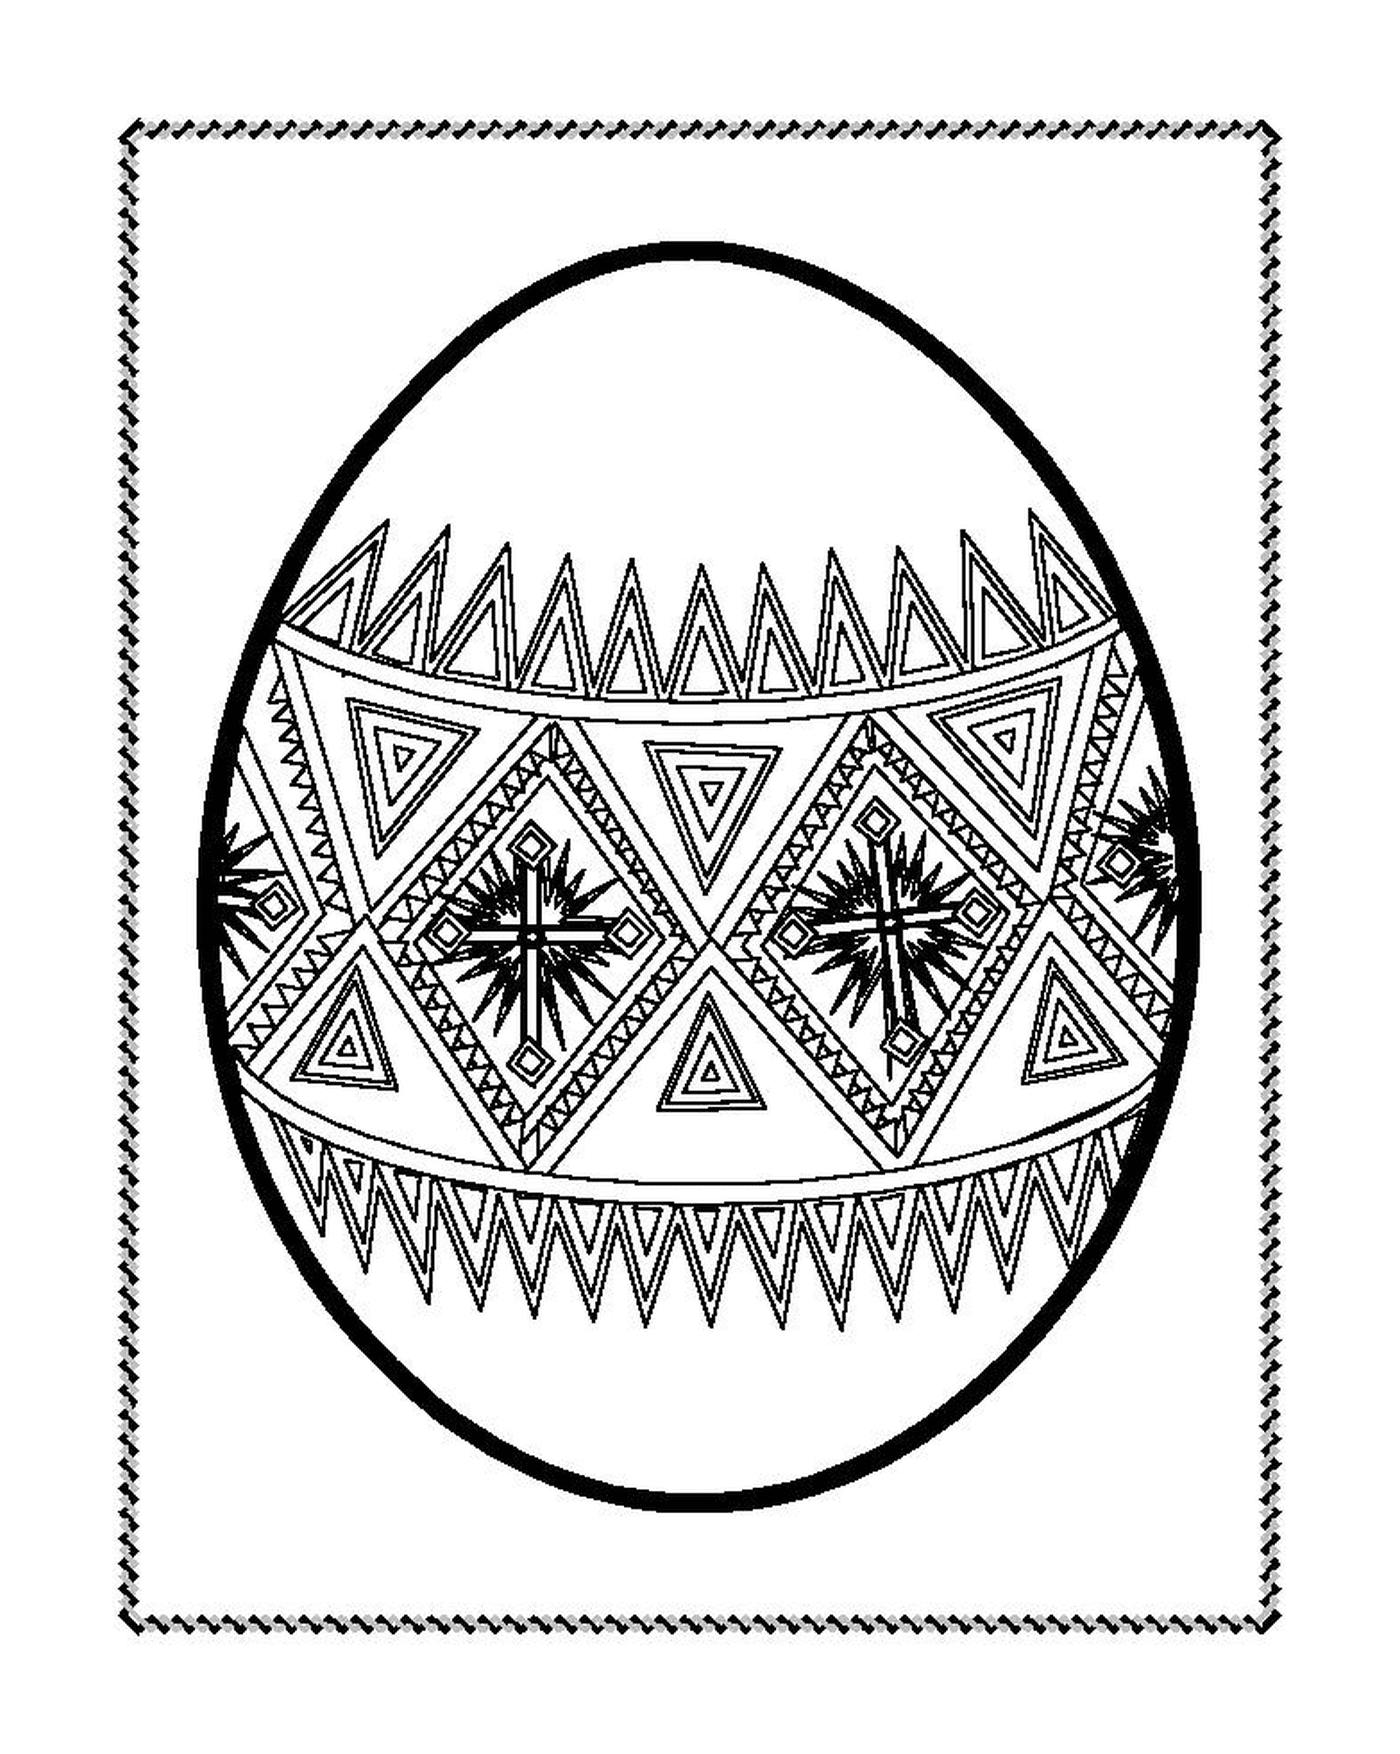  Un huevo de Pascua decorado con motivos geométricos 